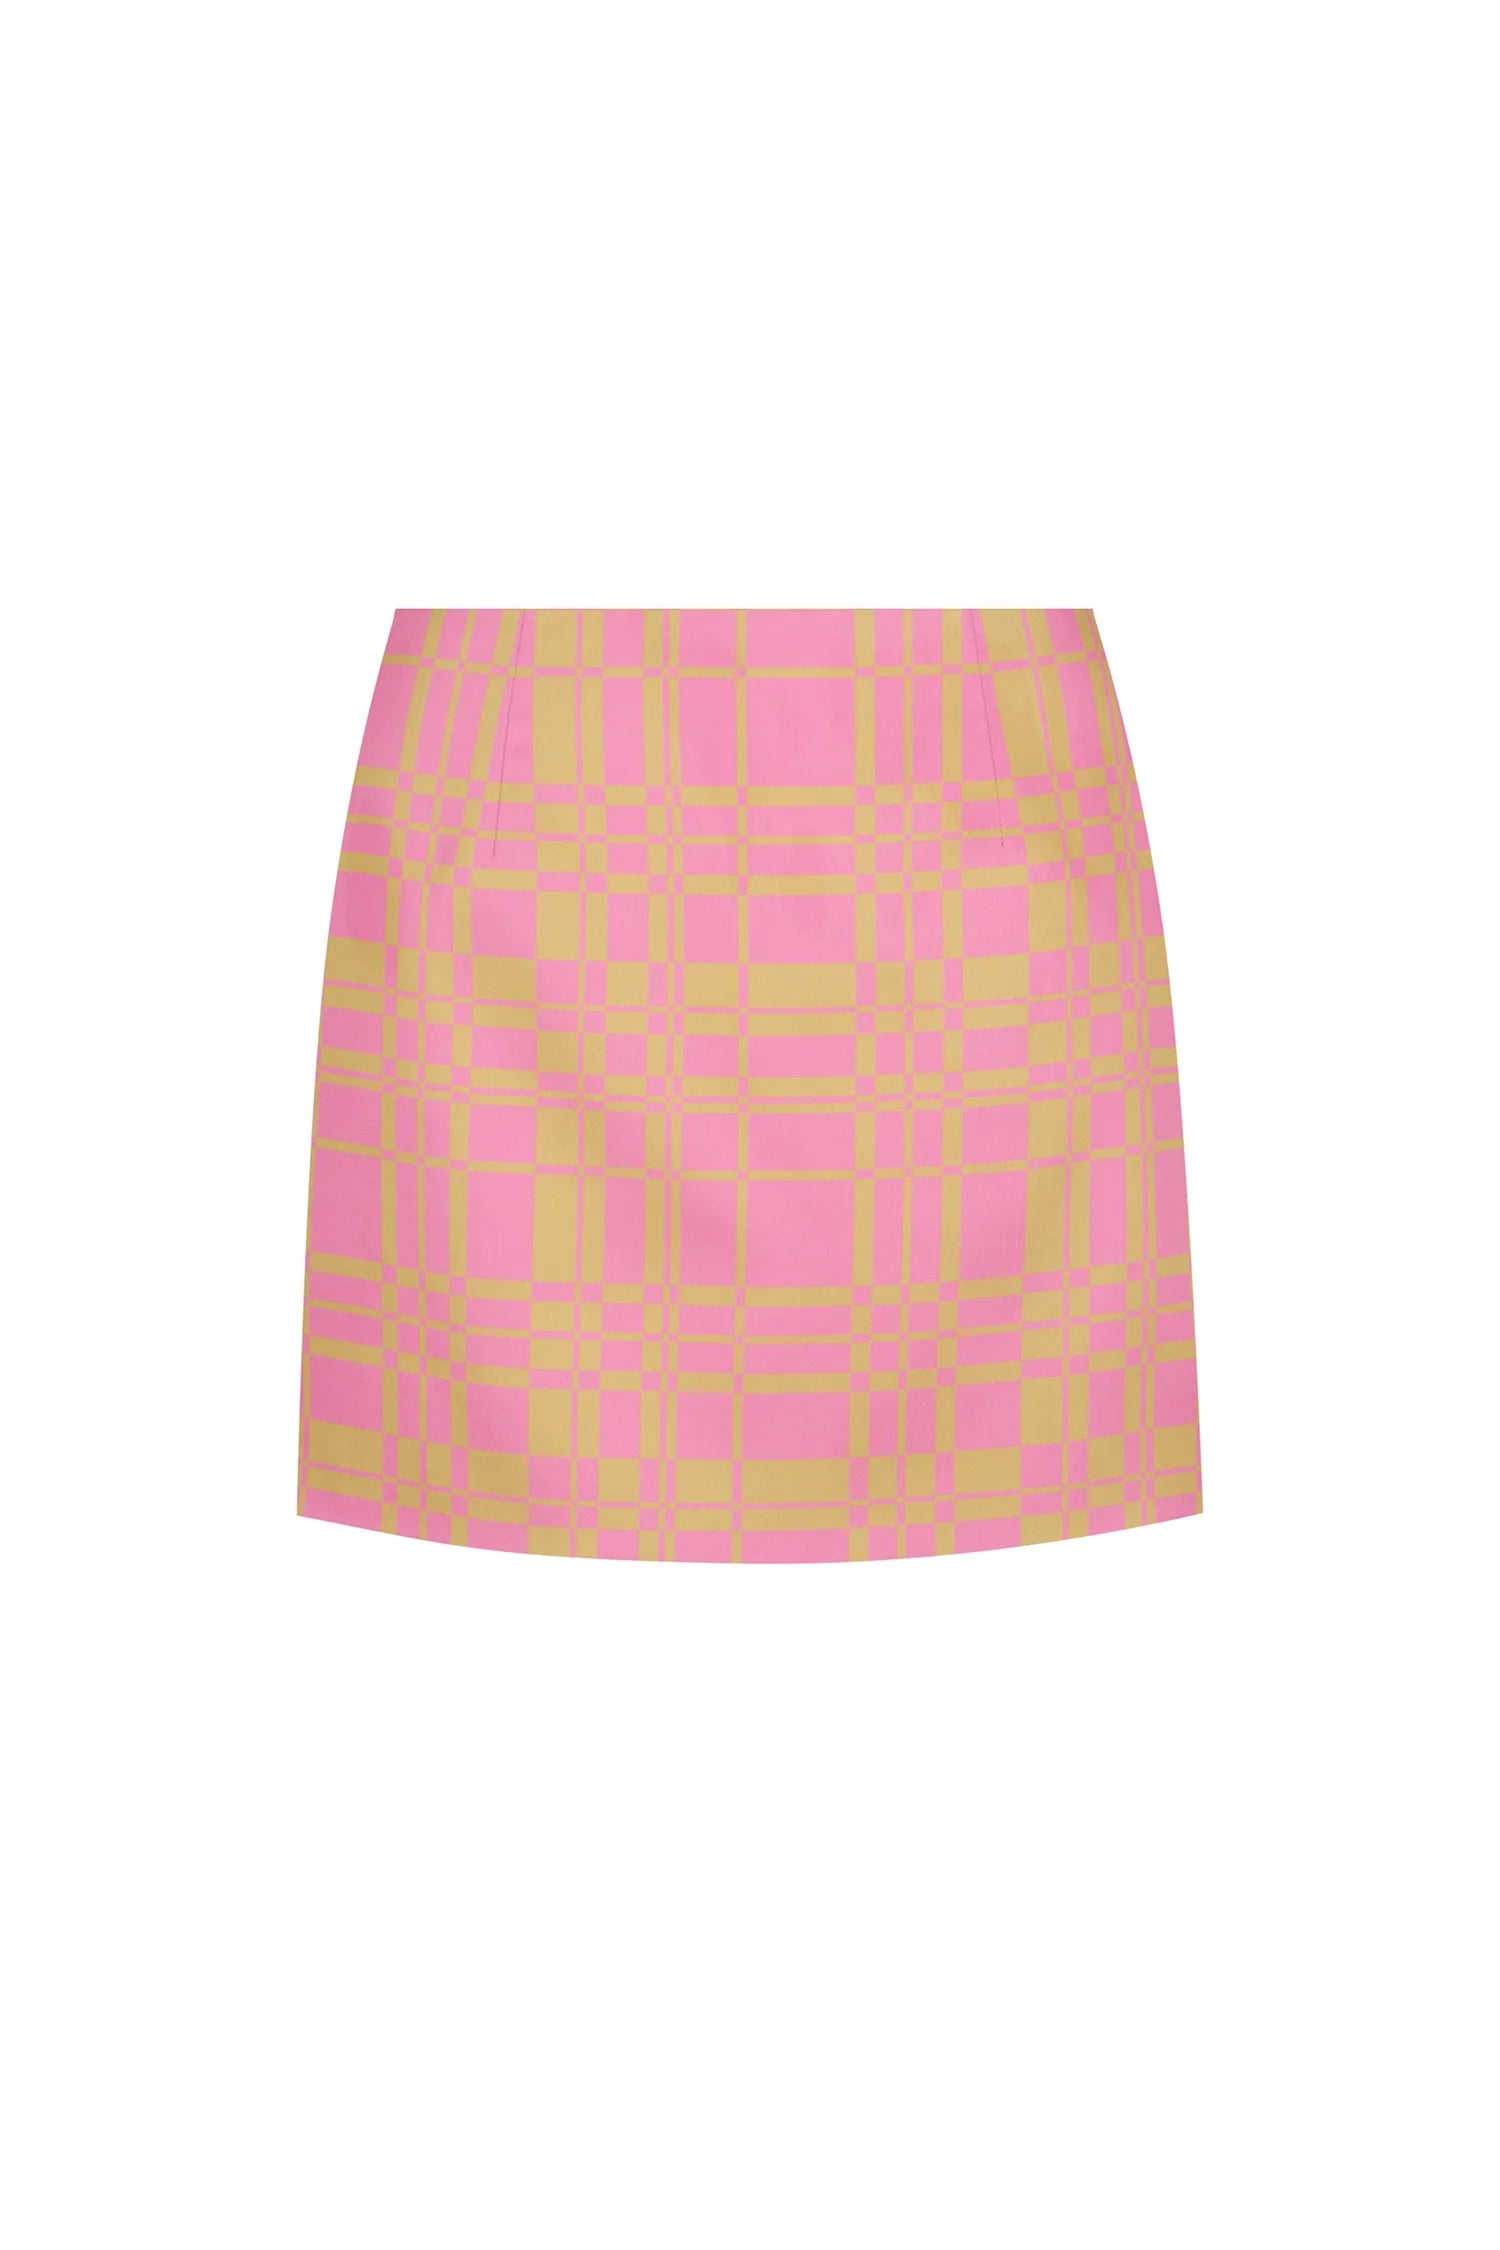 Arava Skirt in Pink Checker